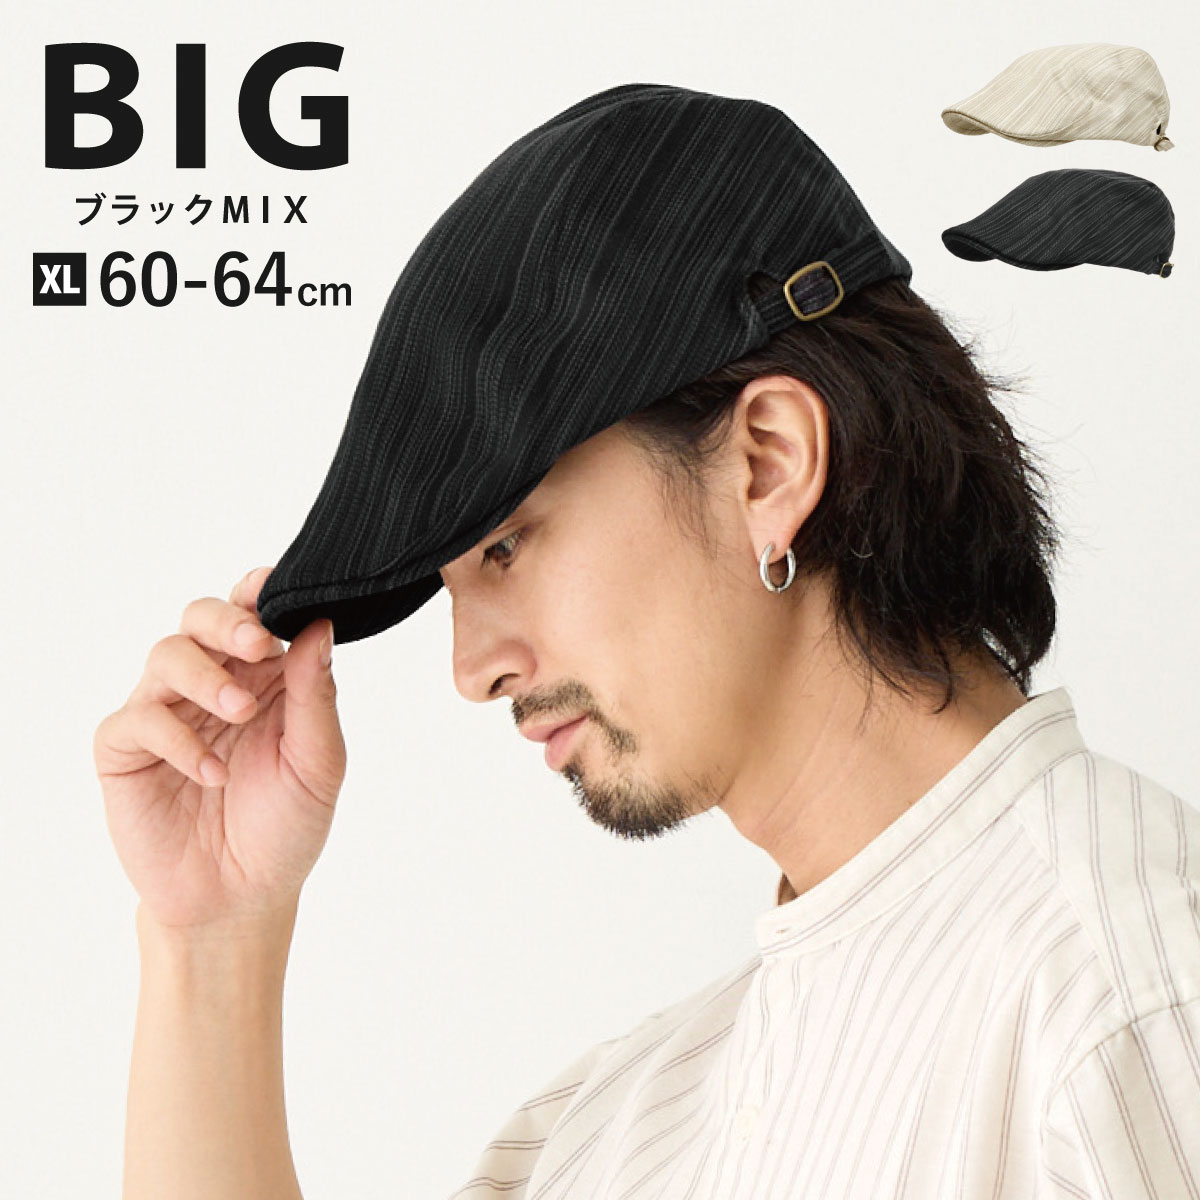 ハンチング ストライプ風 細ステッチ 涼しい コットン 父の日 帽子 大きいサイズ 最大64cm キ...